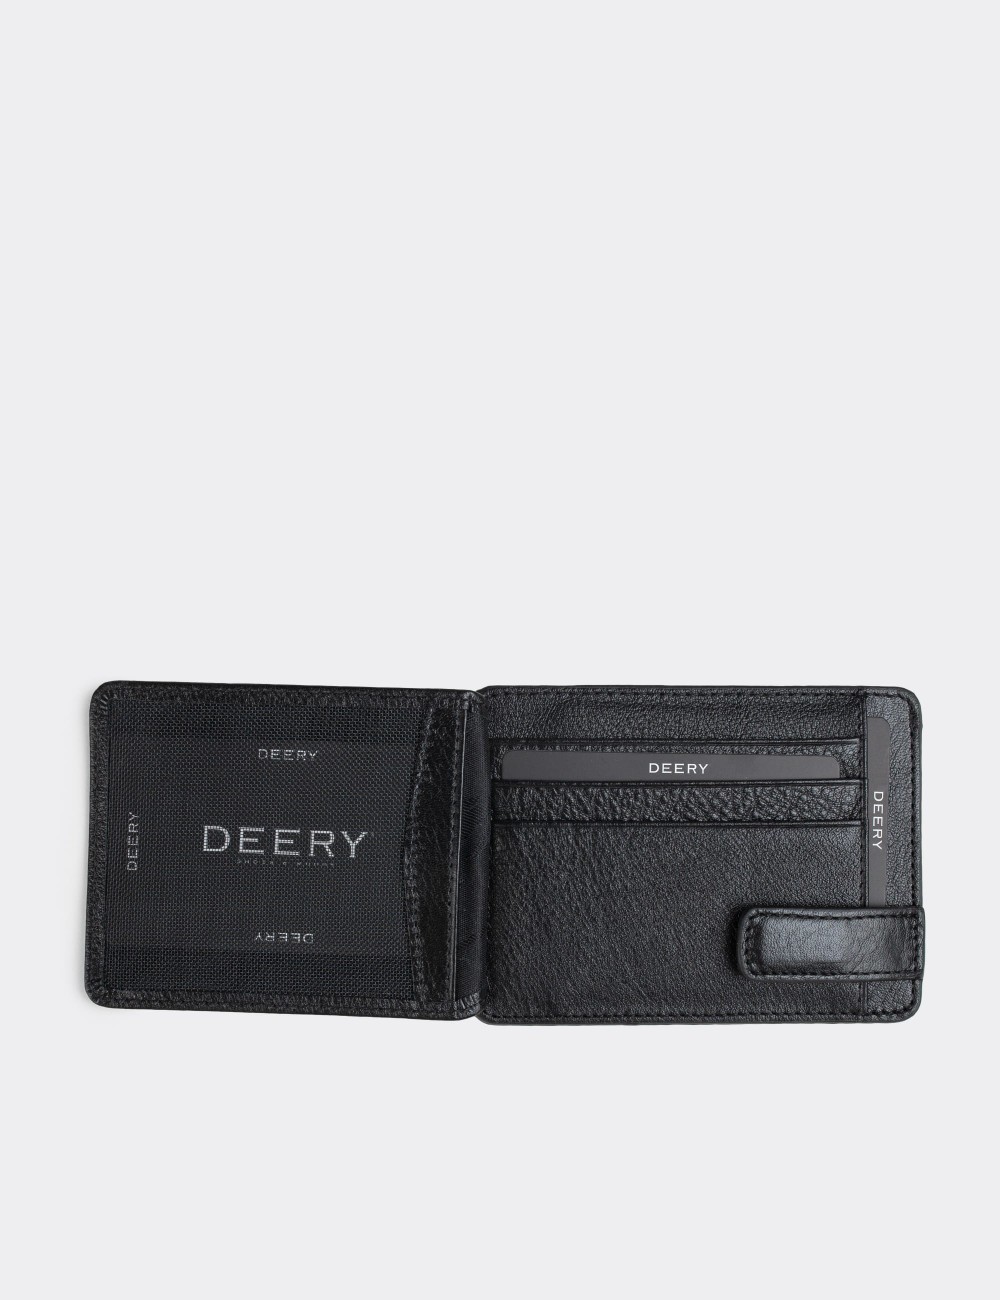  Leather Black Men's Wallet - 00521MSYHZ01